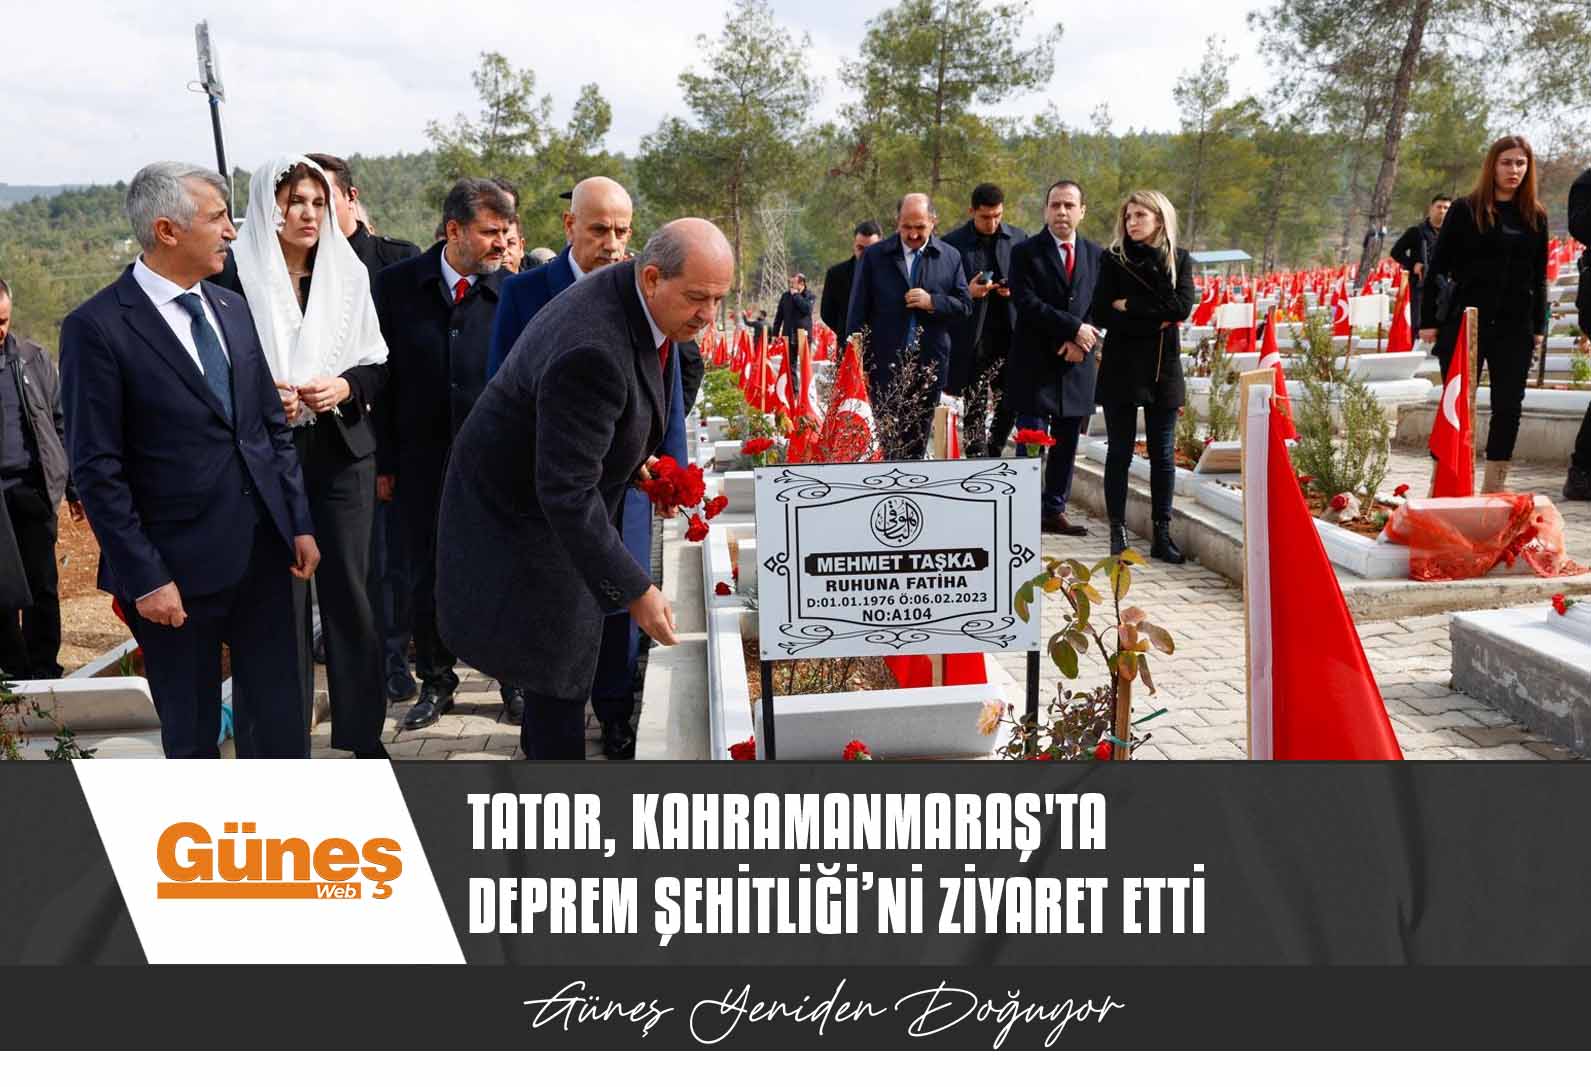 Cumhurbaşkanı Tatar, Kahramanmaraş’ta Deprem Şehitliği’ni ziyaret etti